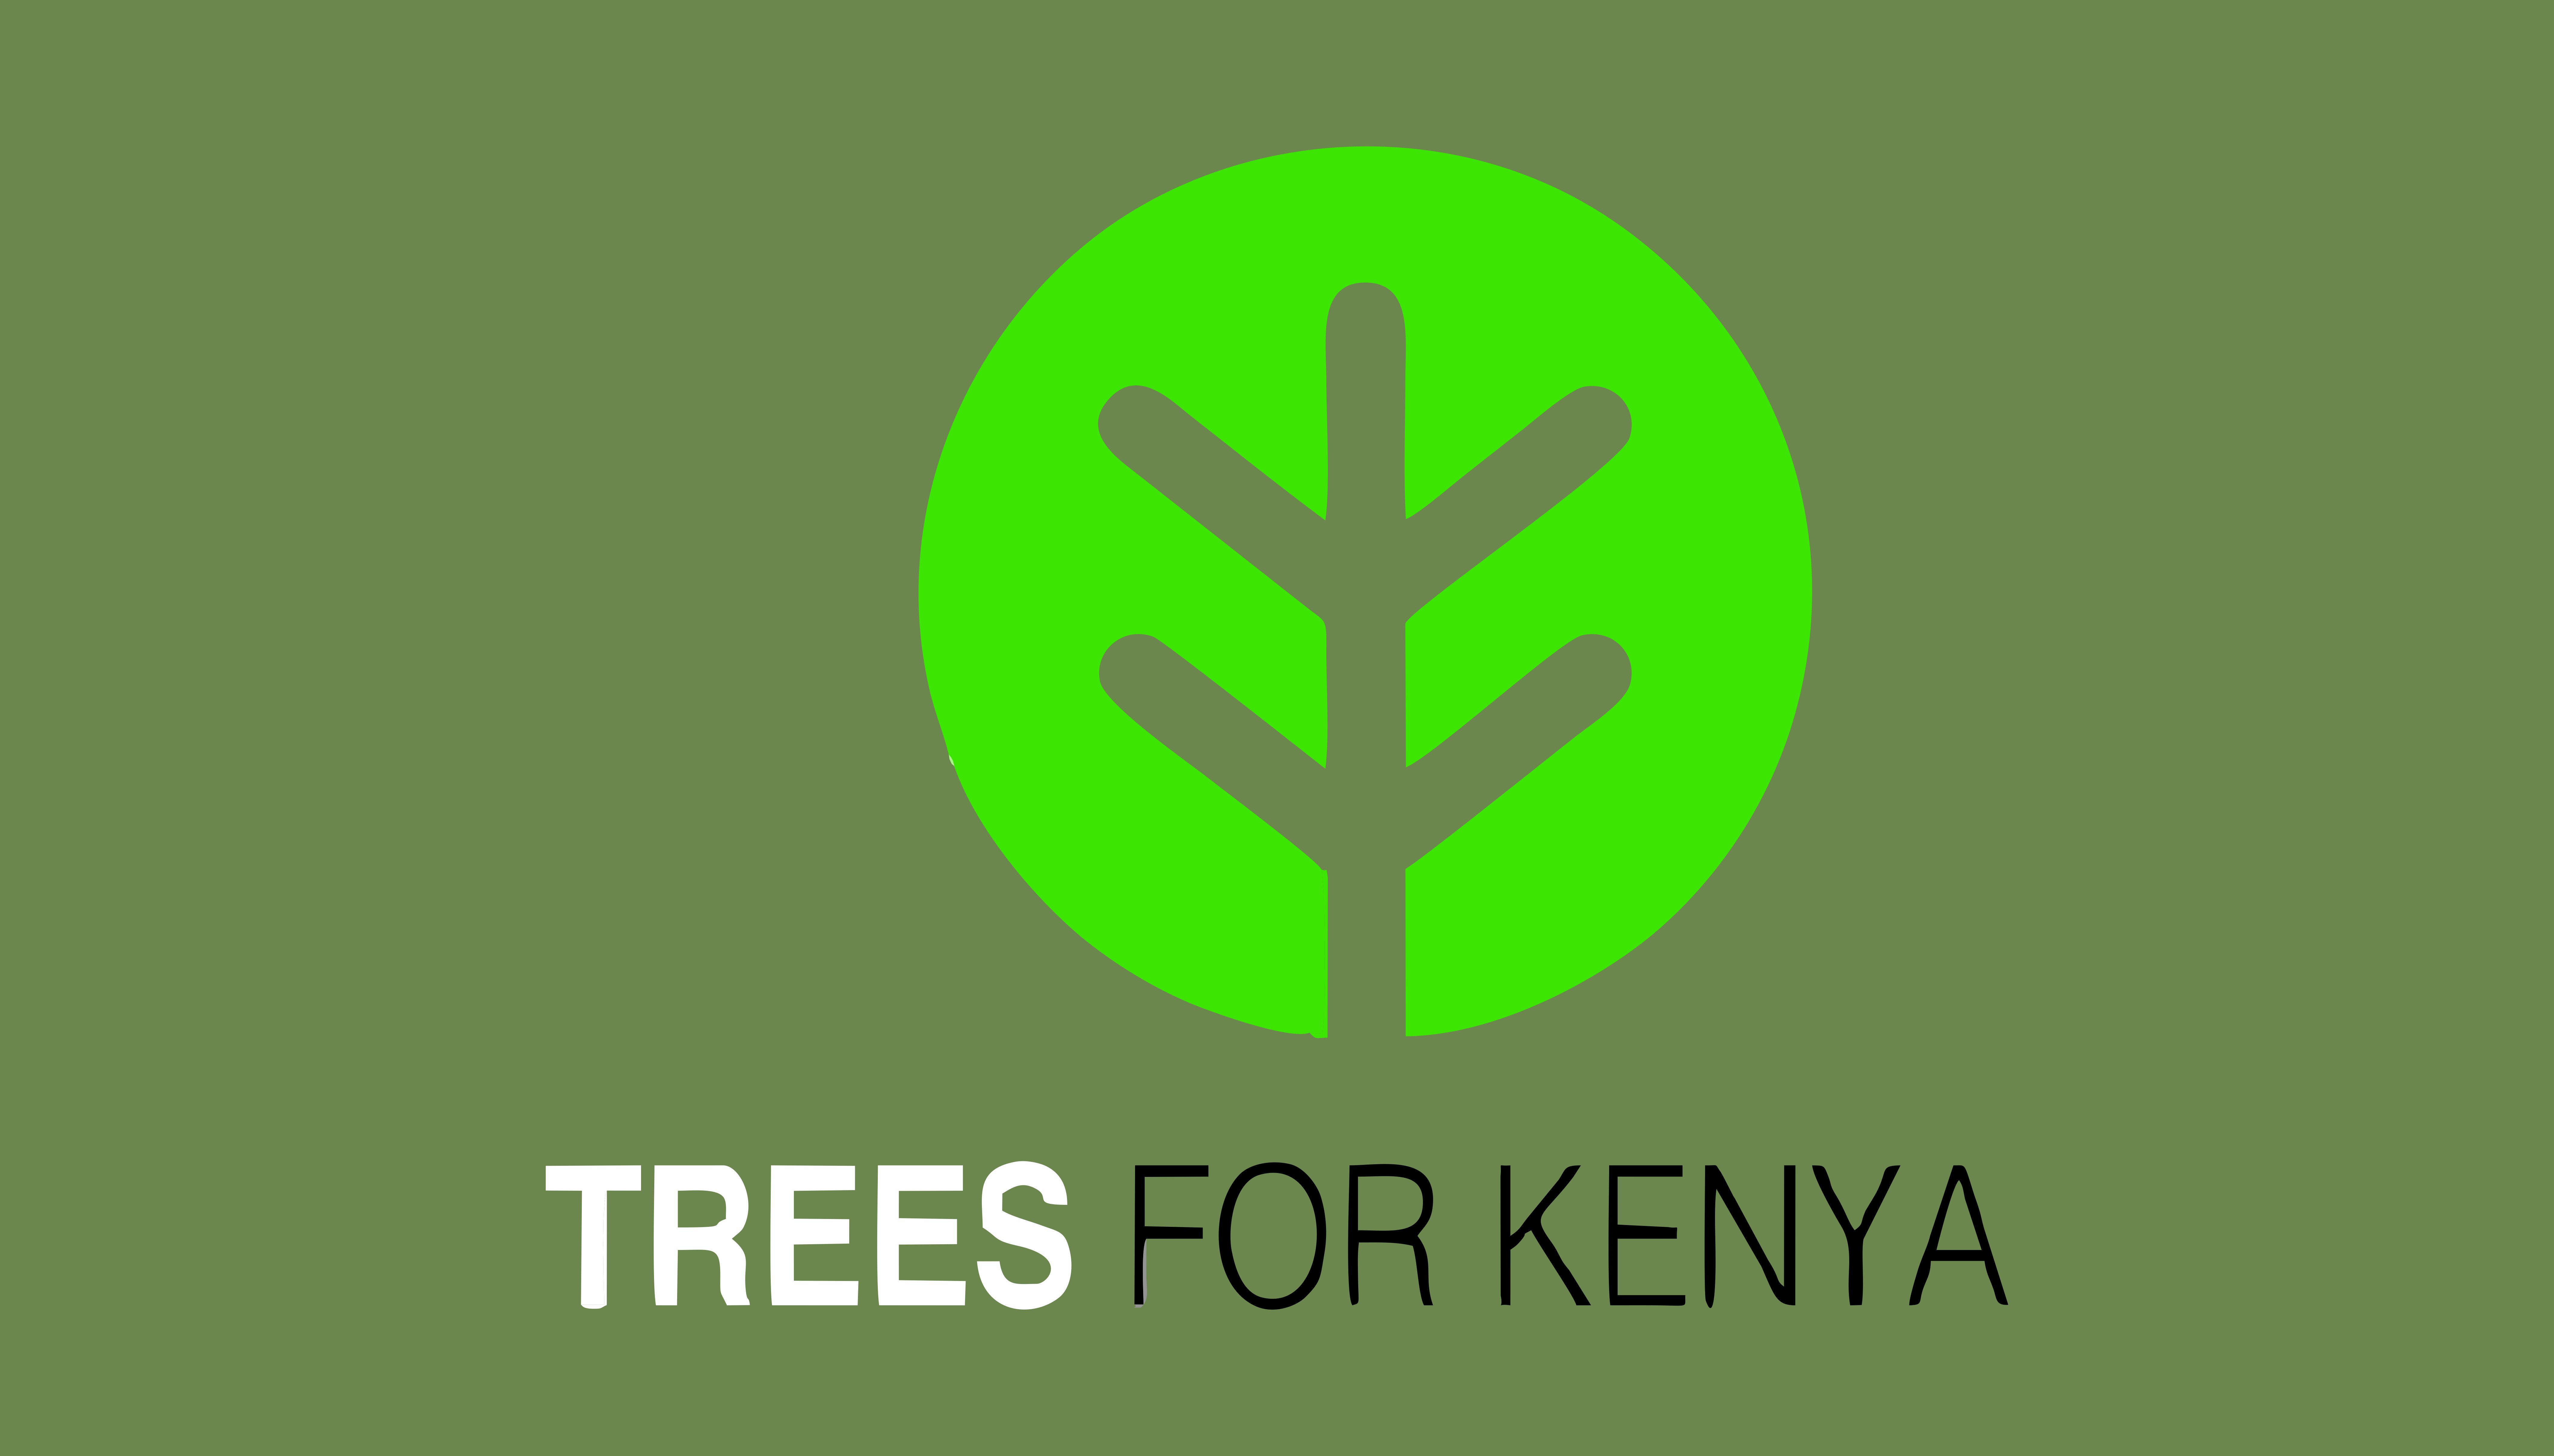 Trees for Kenya